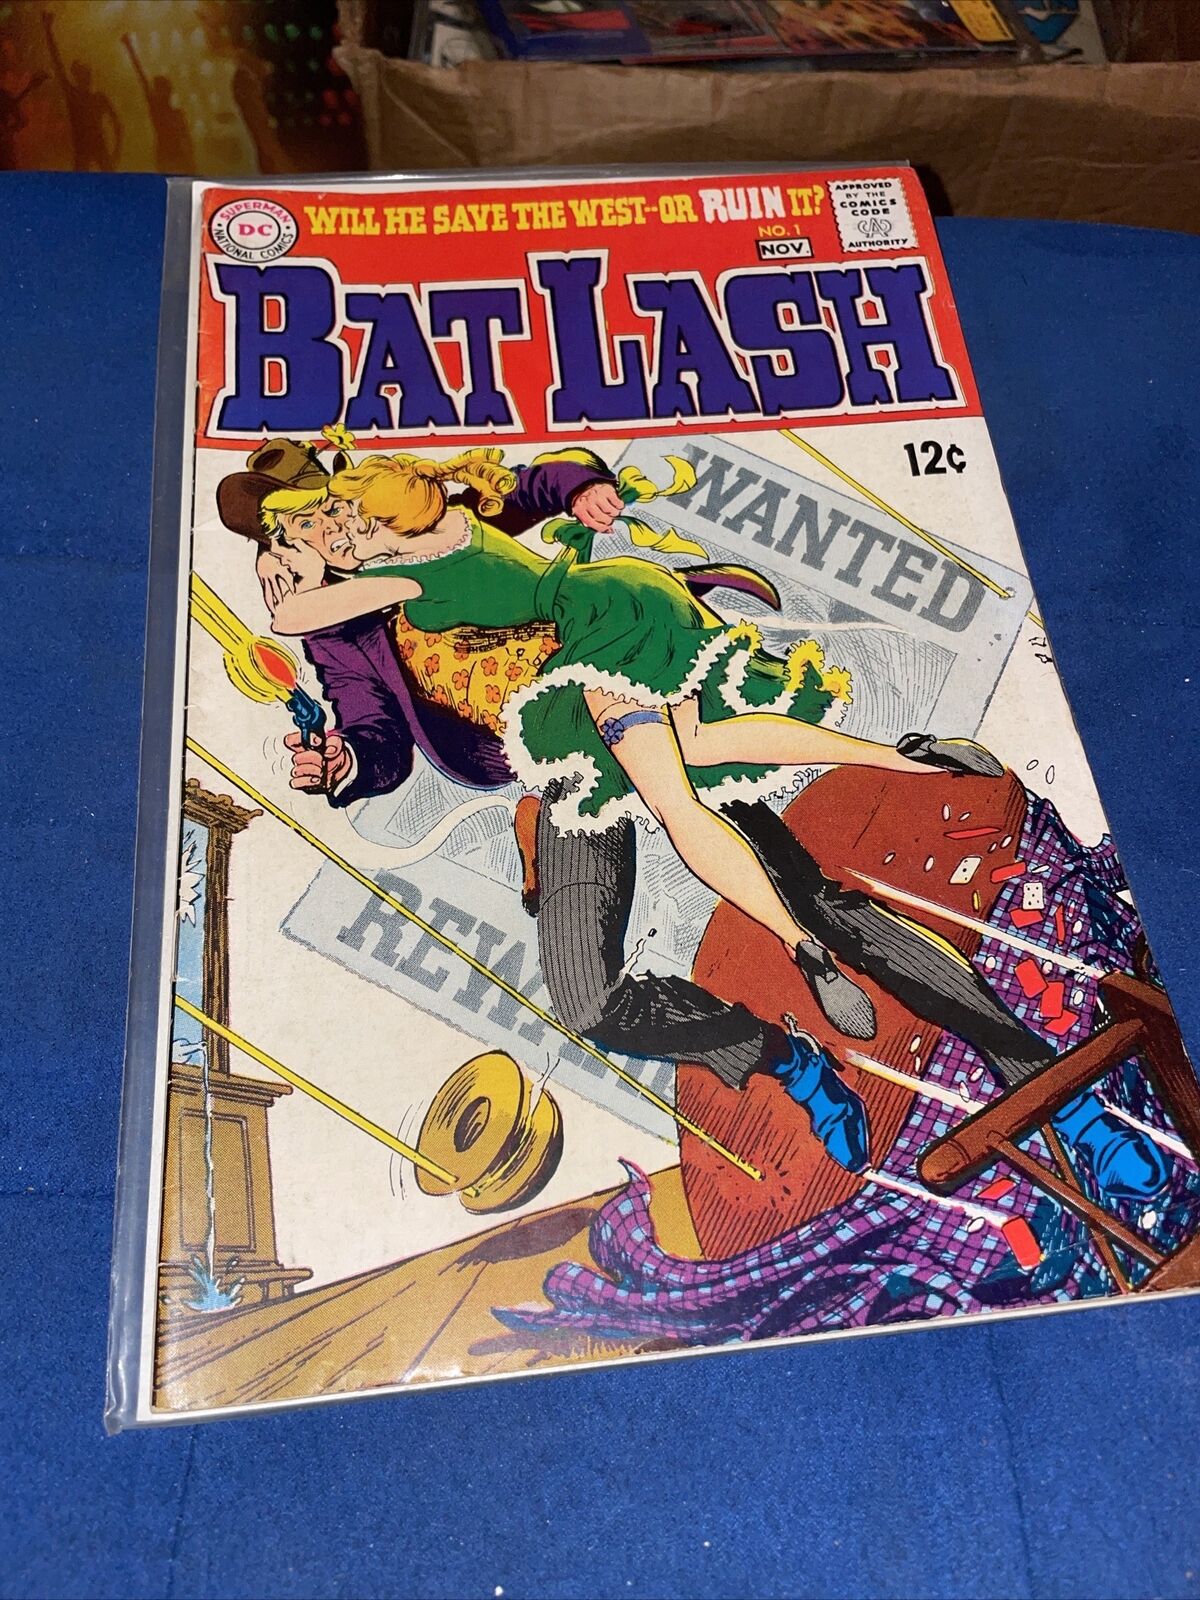 Bat Lash No. 1 Sergio Aragones, Nick Cardy Silver Age 1968 DC Comics Western